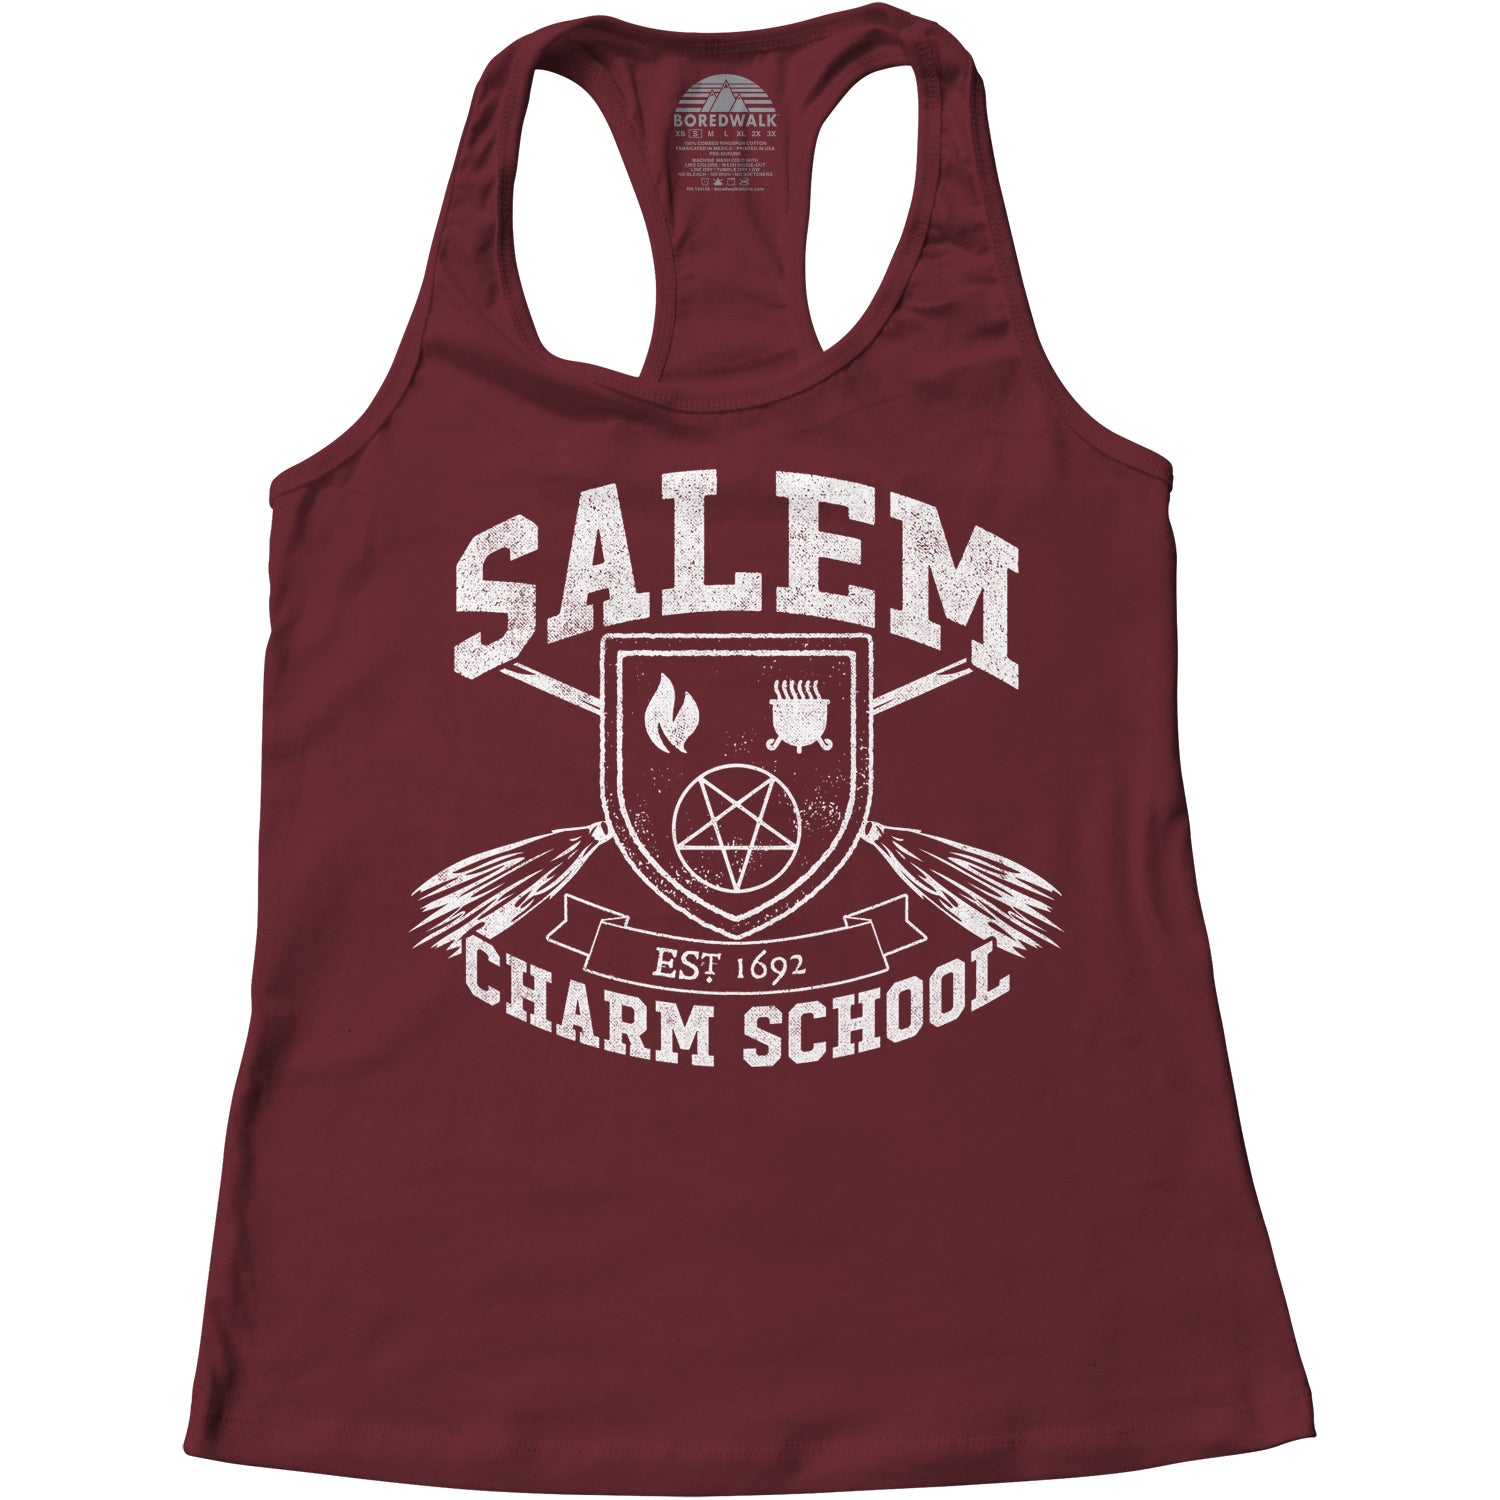 Women's Salem Charm School Racerback Tank Top